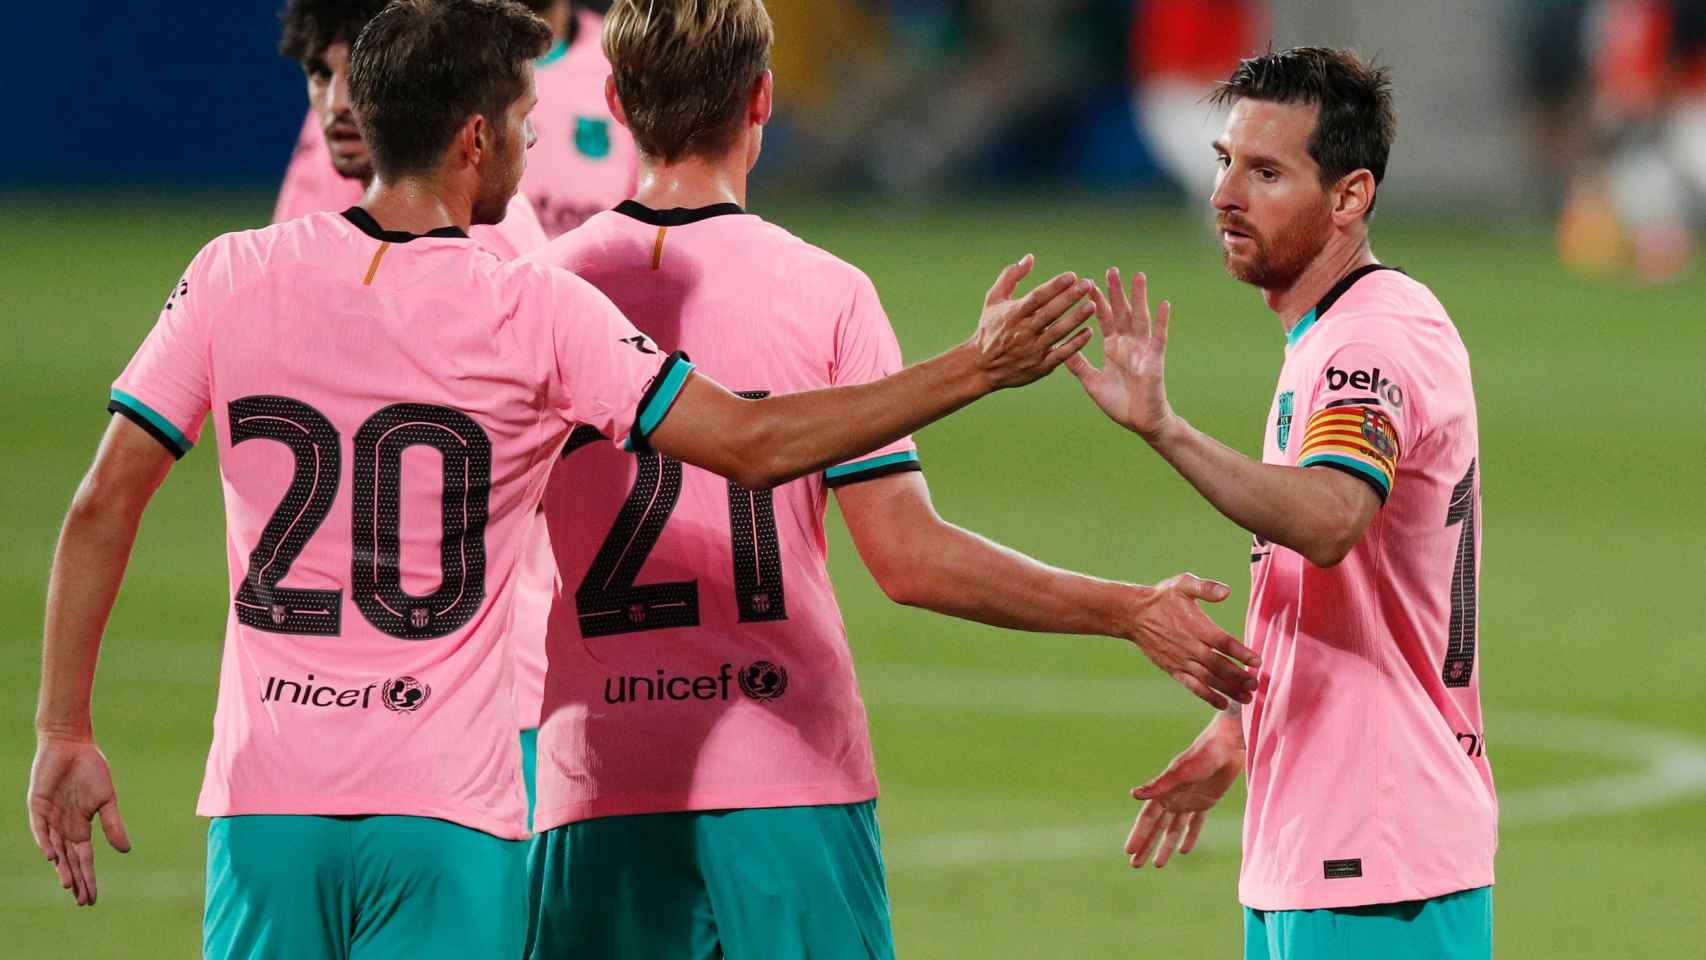 Piña de los jugadores del Barcelona tras el gol de Messi